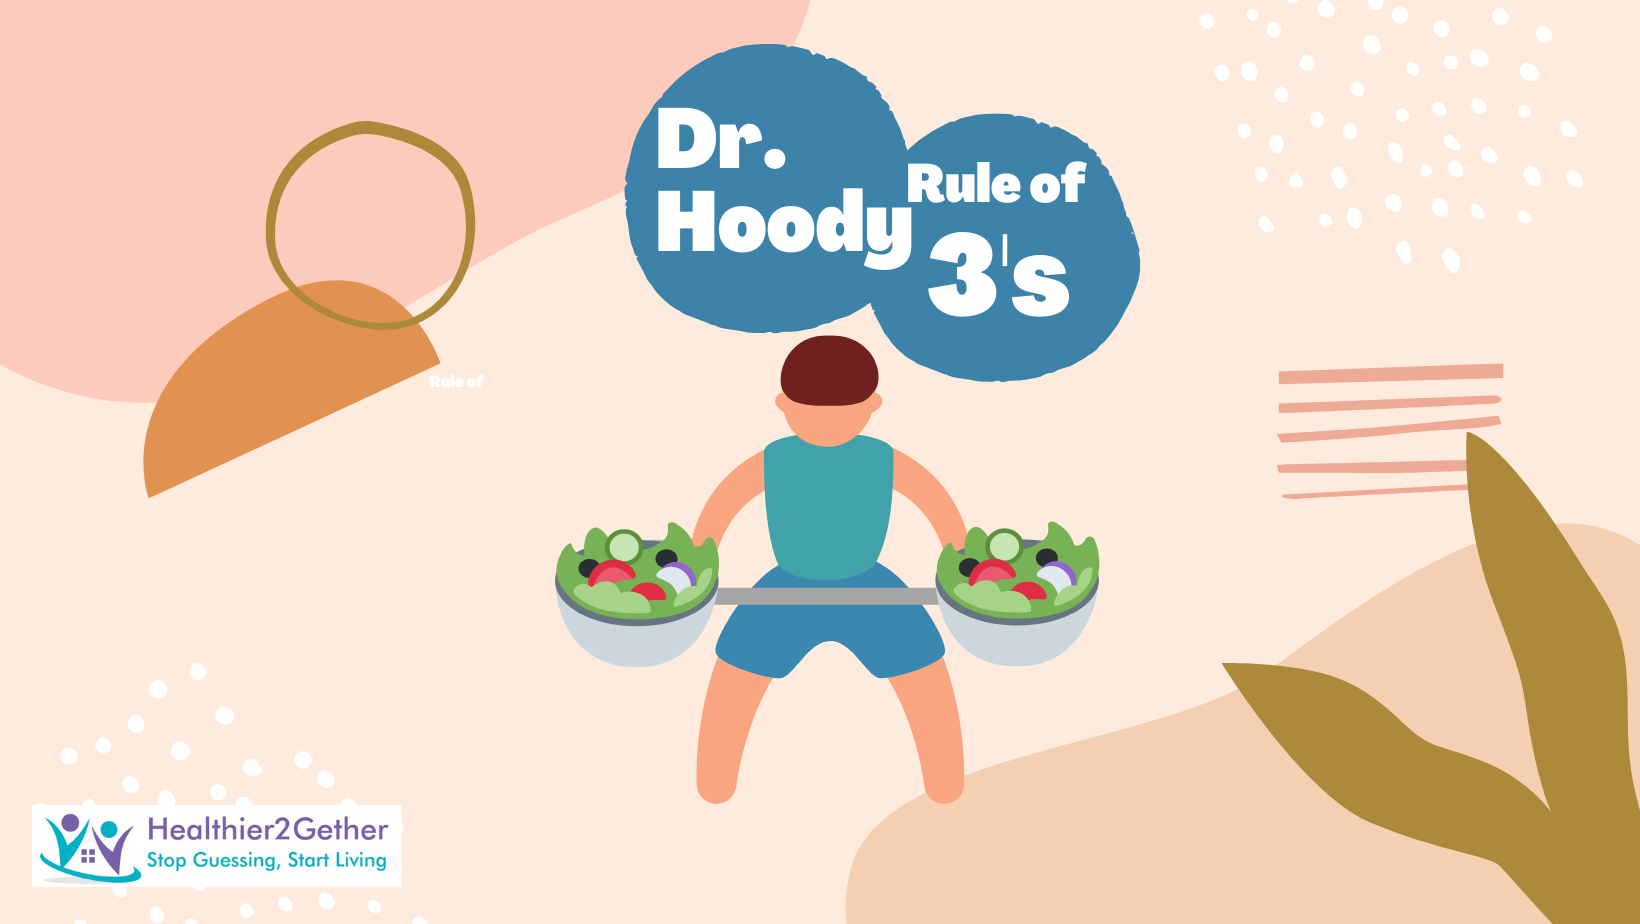 Dr. Hoody's Rule of 3s